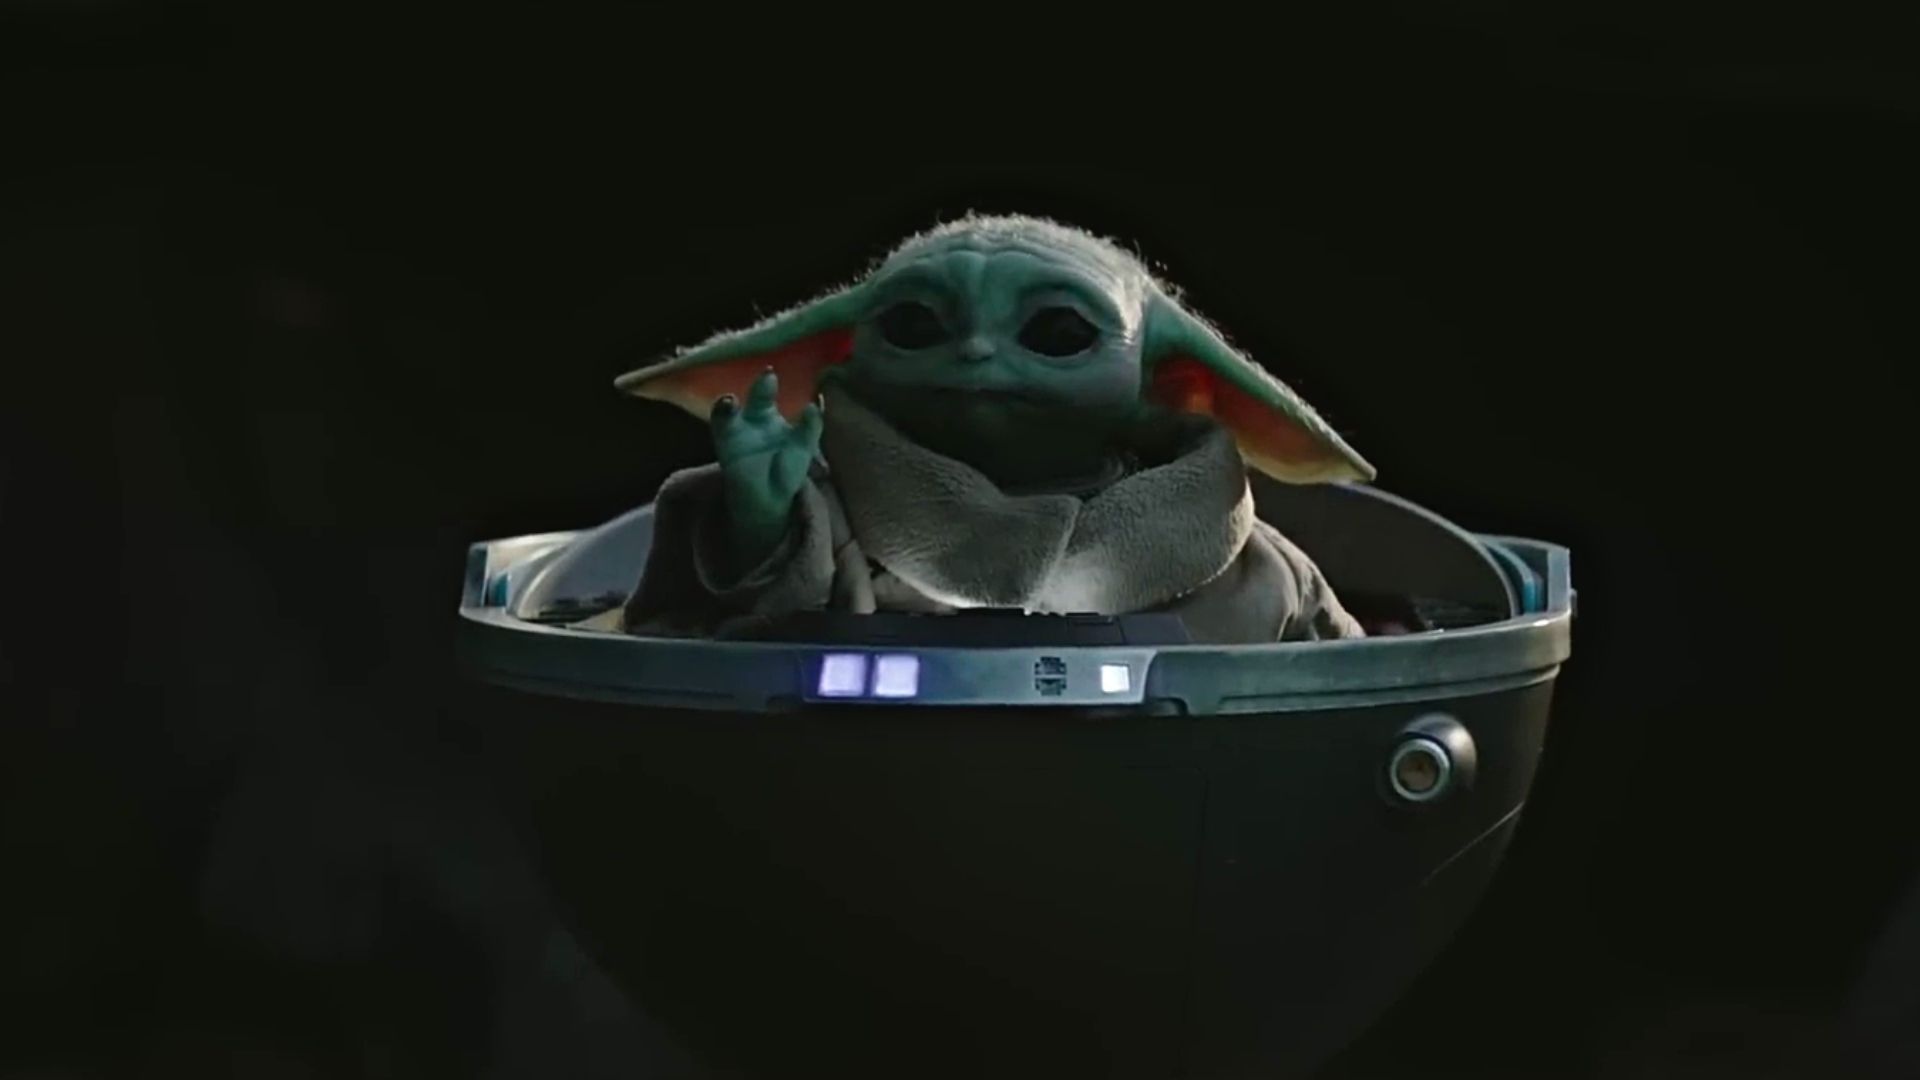 Star Wars : l'histoire tragique de Baby Yoda expliquée !